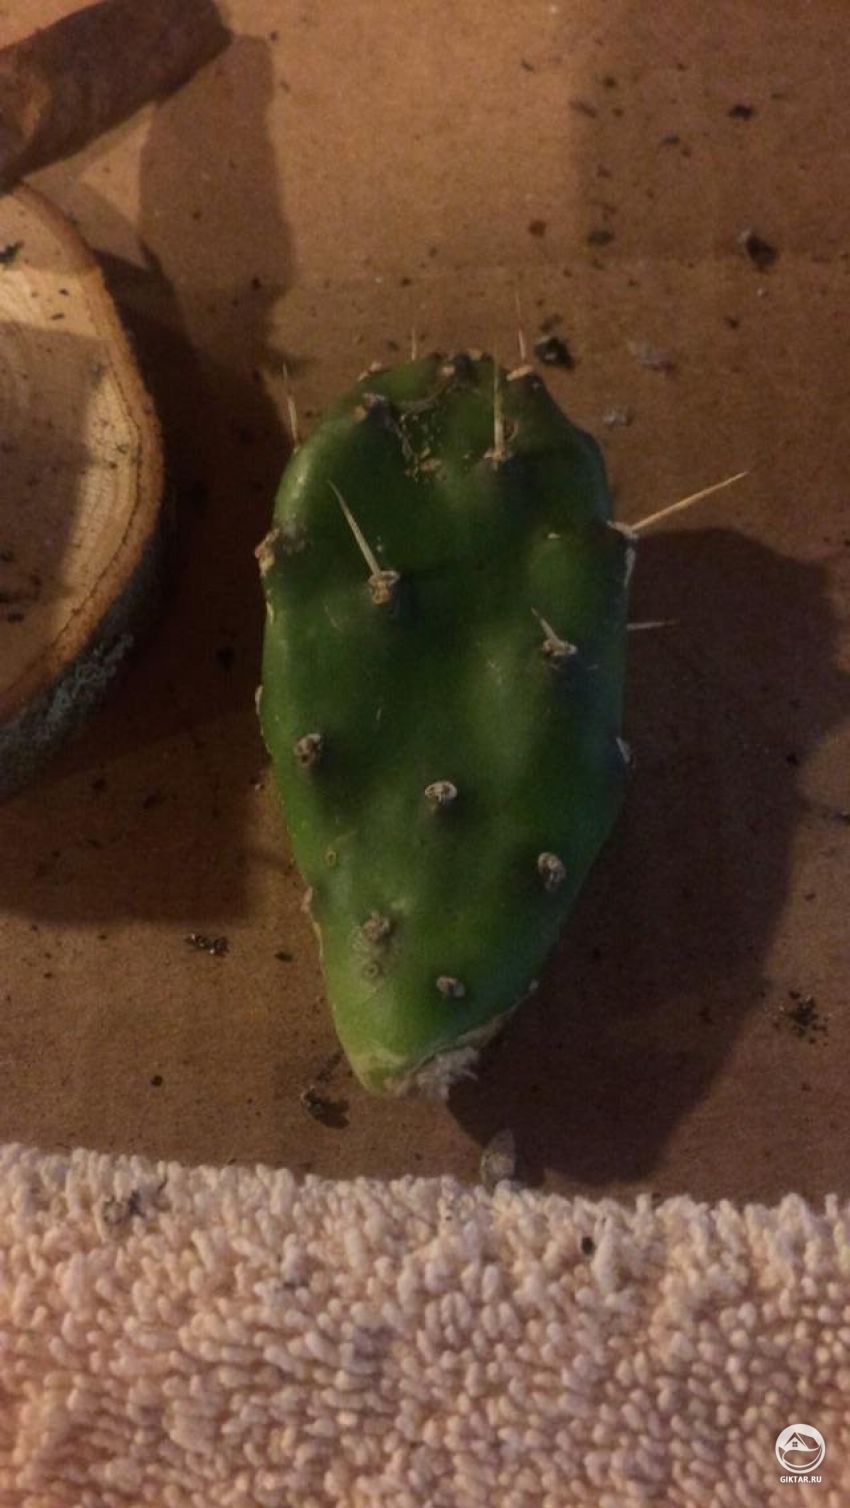 Как я могу сохранить этот кактус?